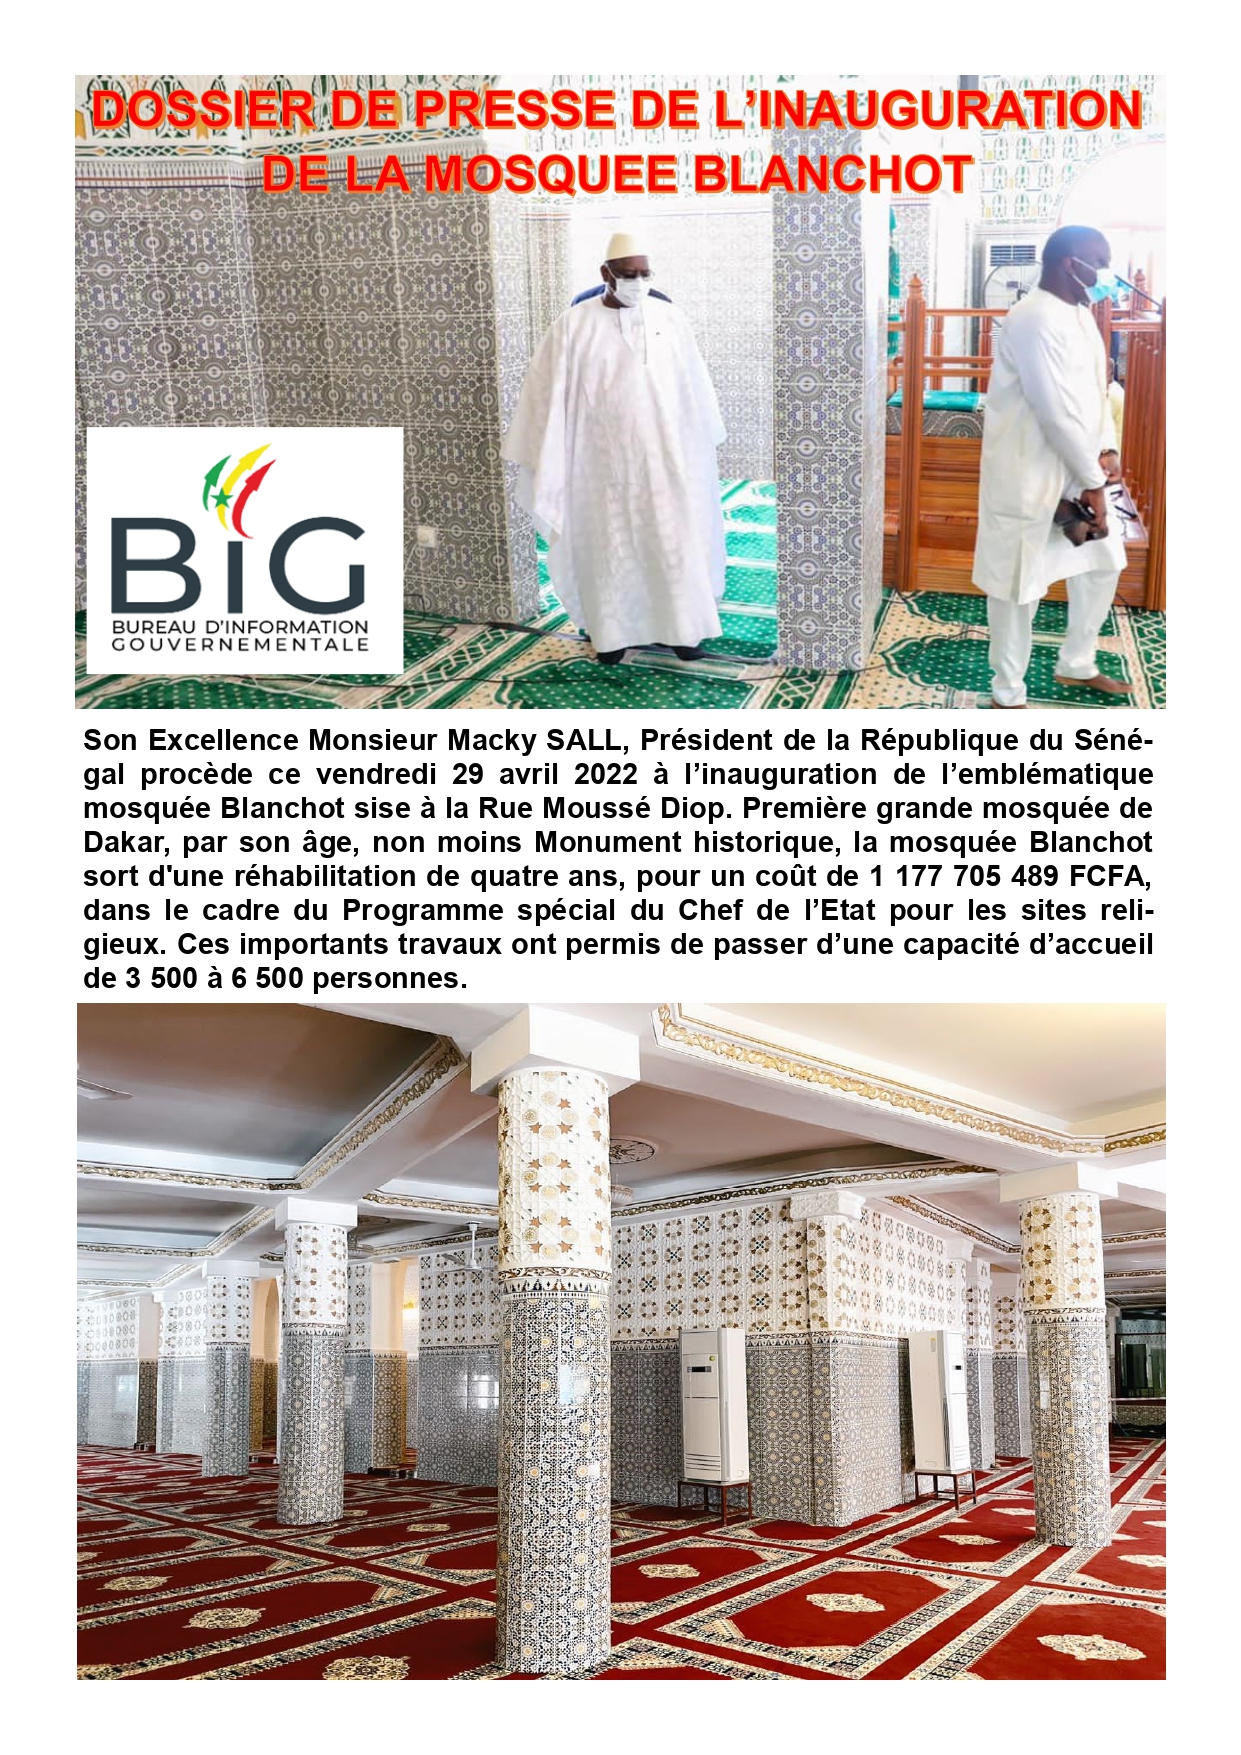 La mosquée Blanchot sort d'une réhabilitation de quatre ans, pour un coût de 1.177.705.489 FCFA ( Macky Sall )